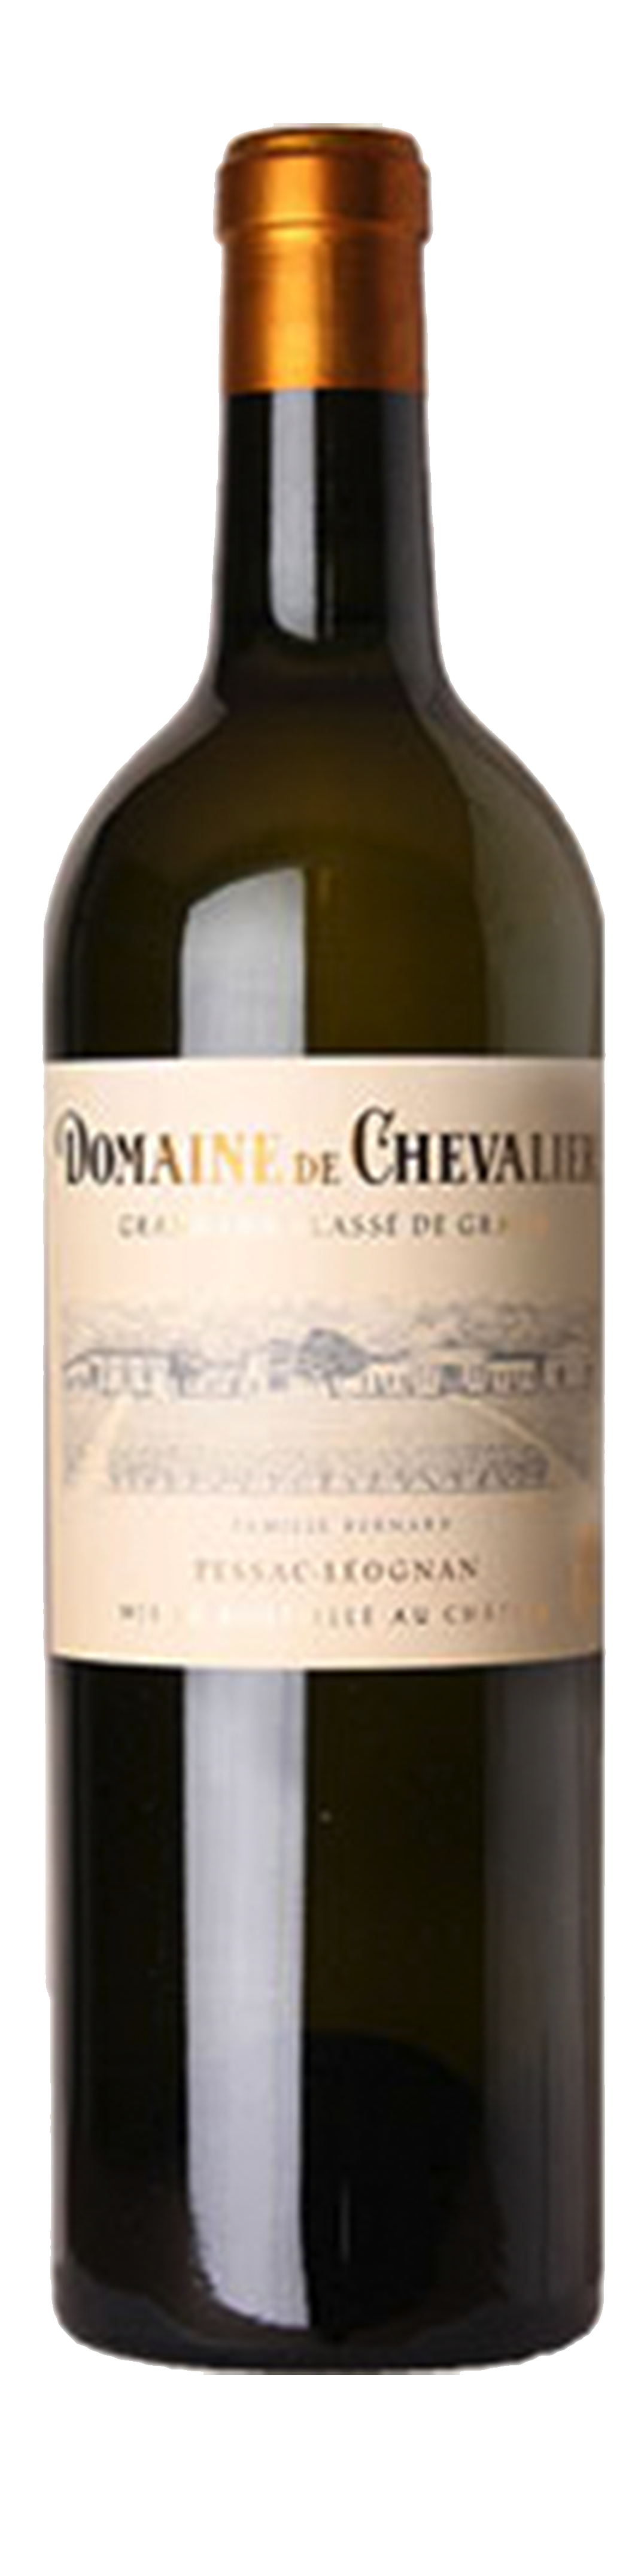 Bottle shot of 2016 Domaine de Chevalier Blanc, Cru Classé Graves